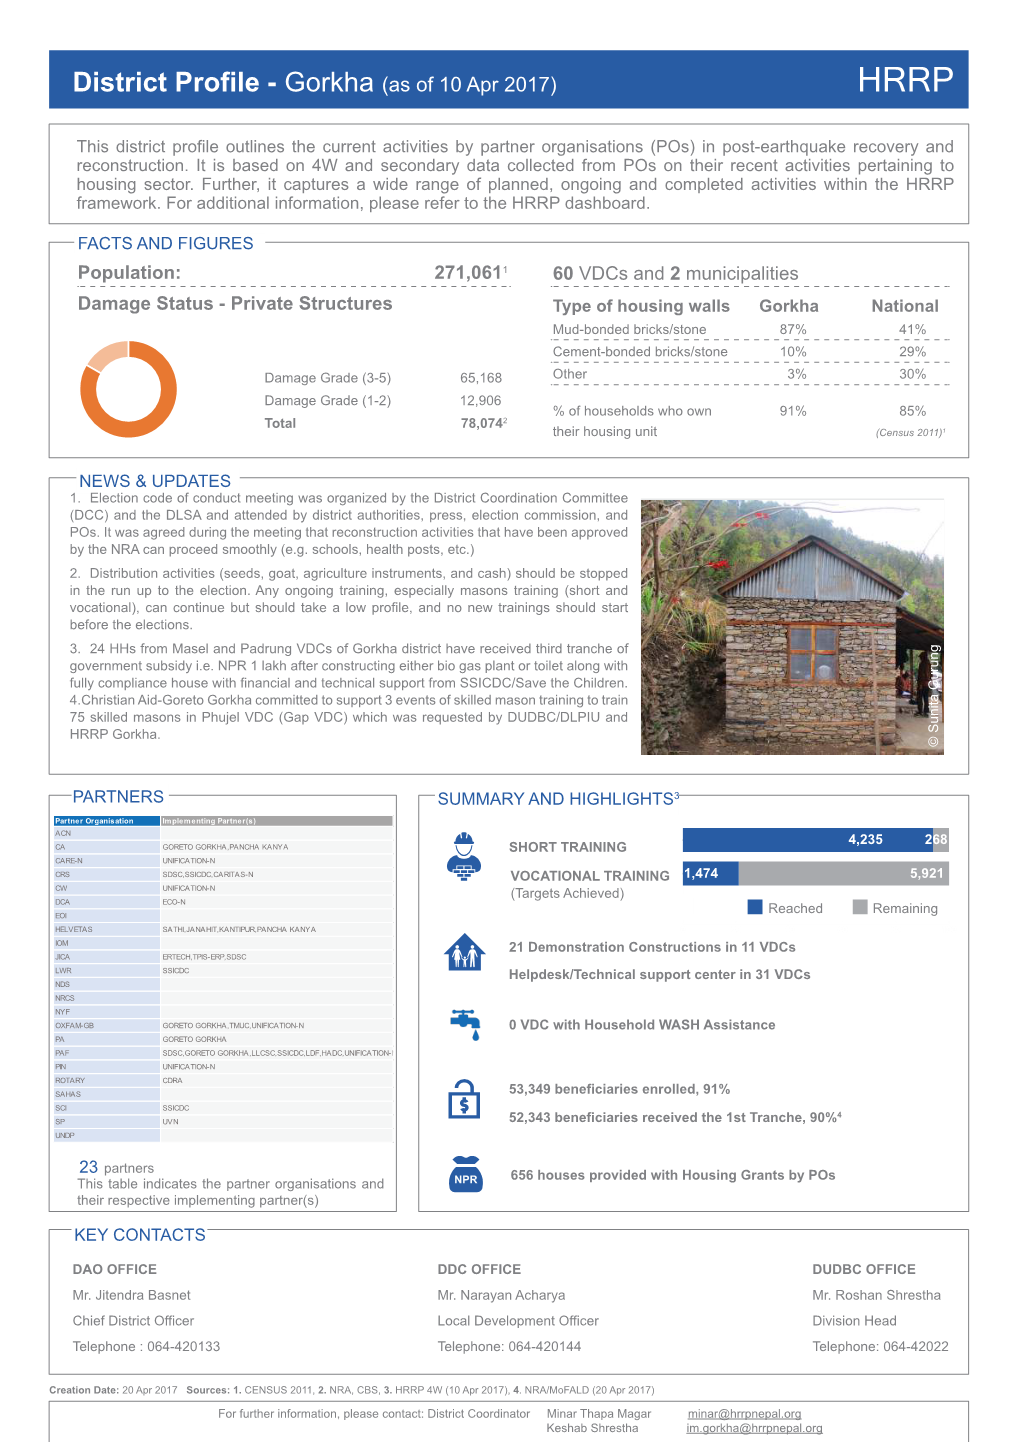 District Profile - Gorkha (As of 10 Apr 2017) HRRP